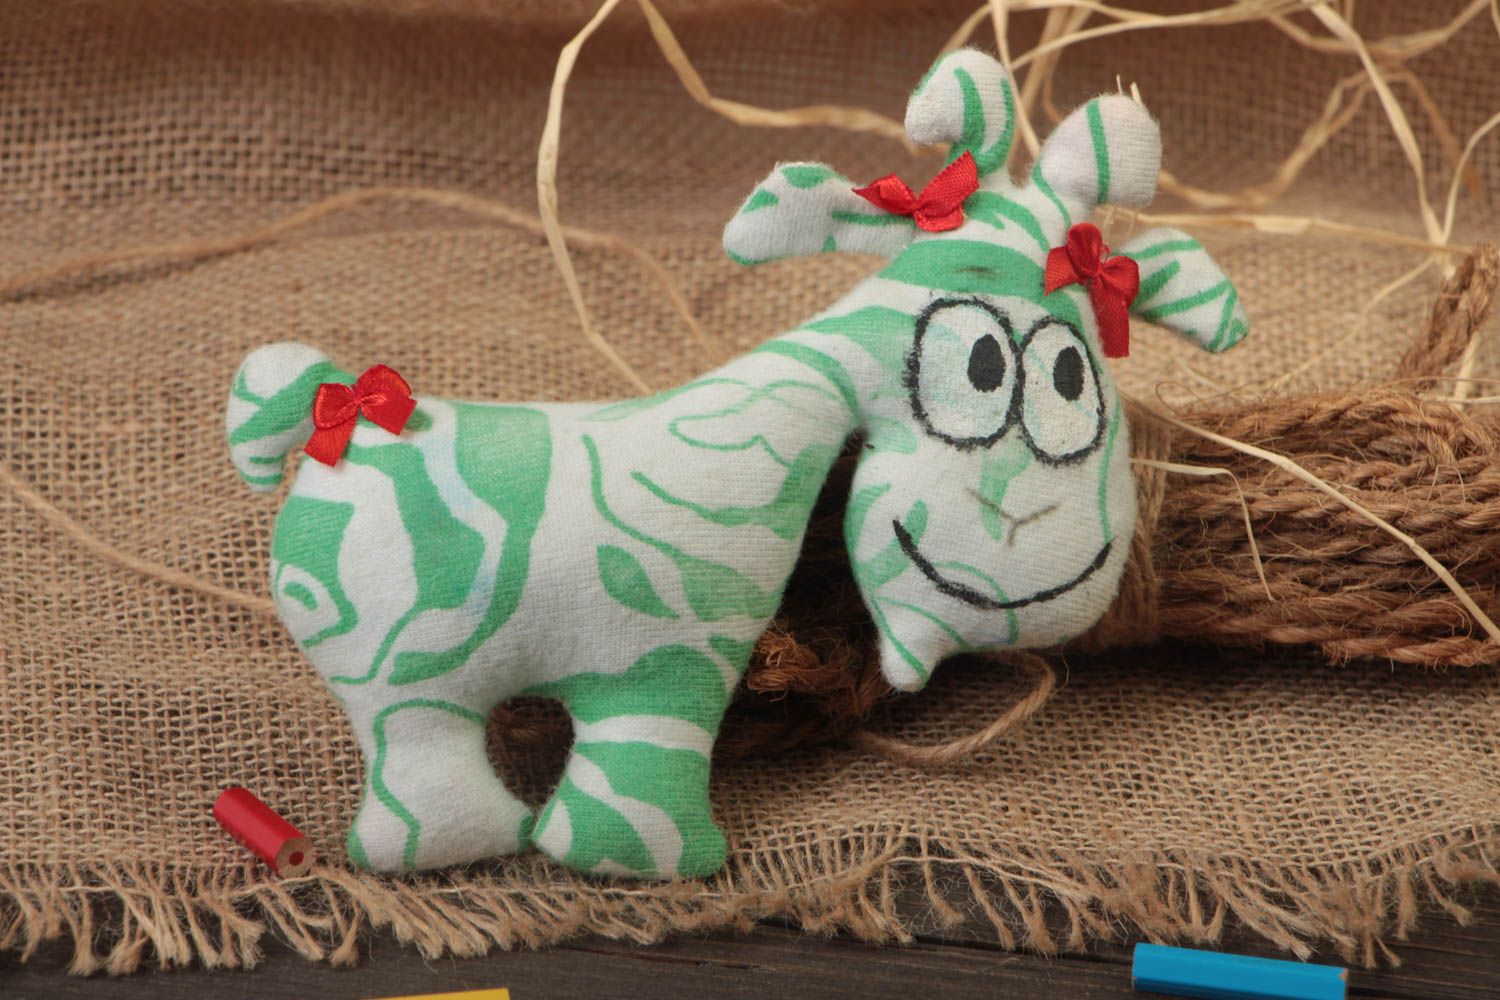 Мягкая игрушка ручной работы в виде козы из хлопка зеленая с белым для ребенка фото 1